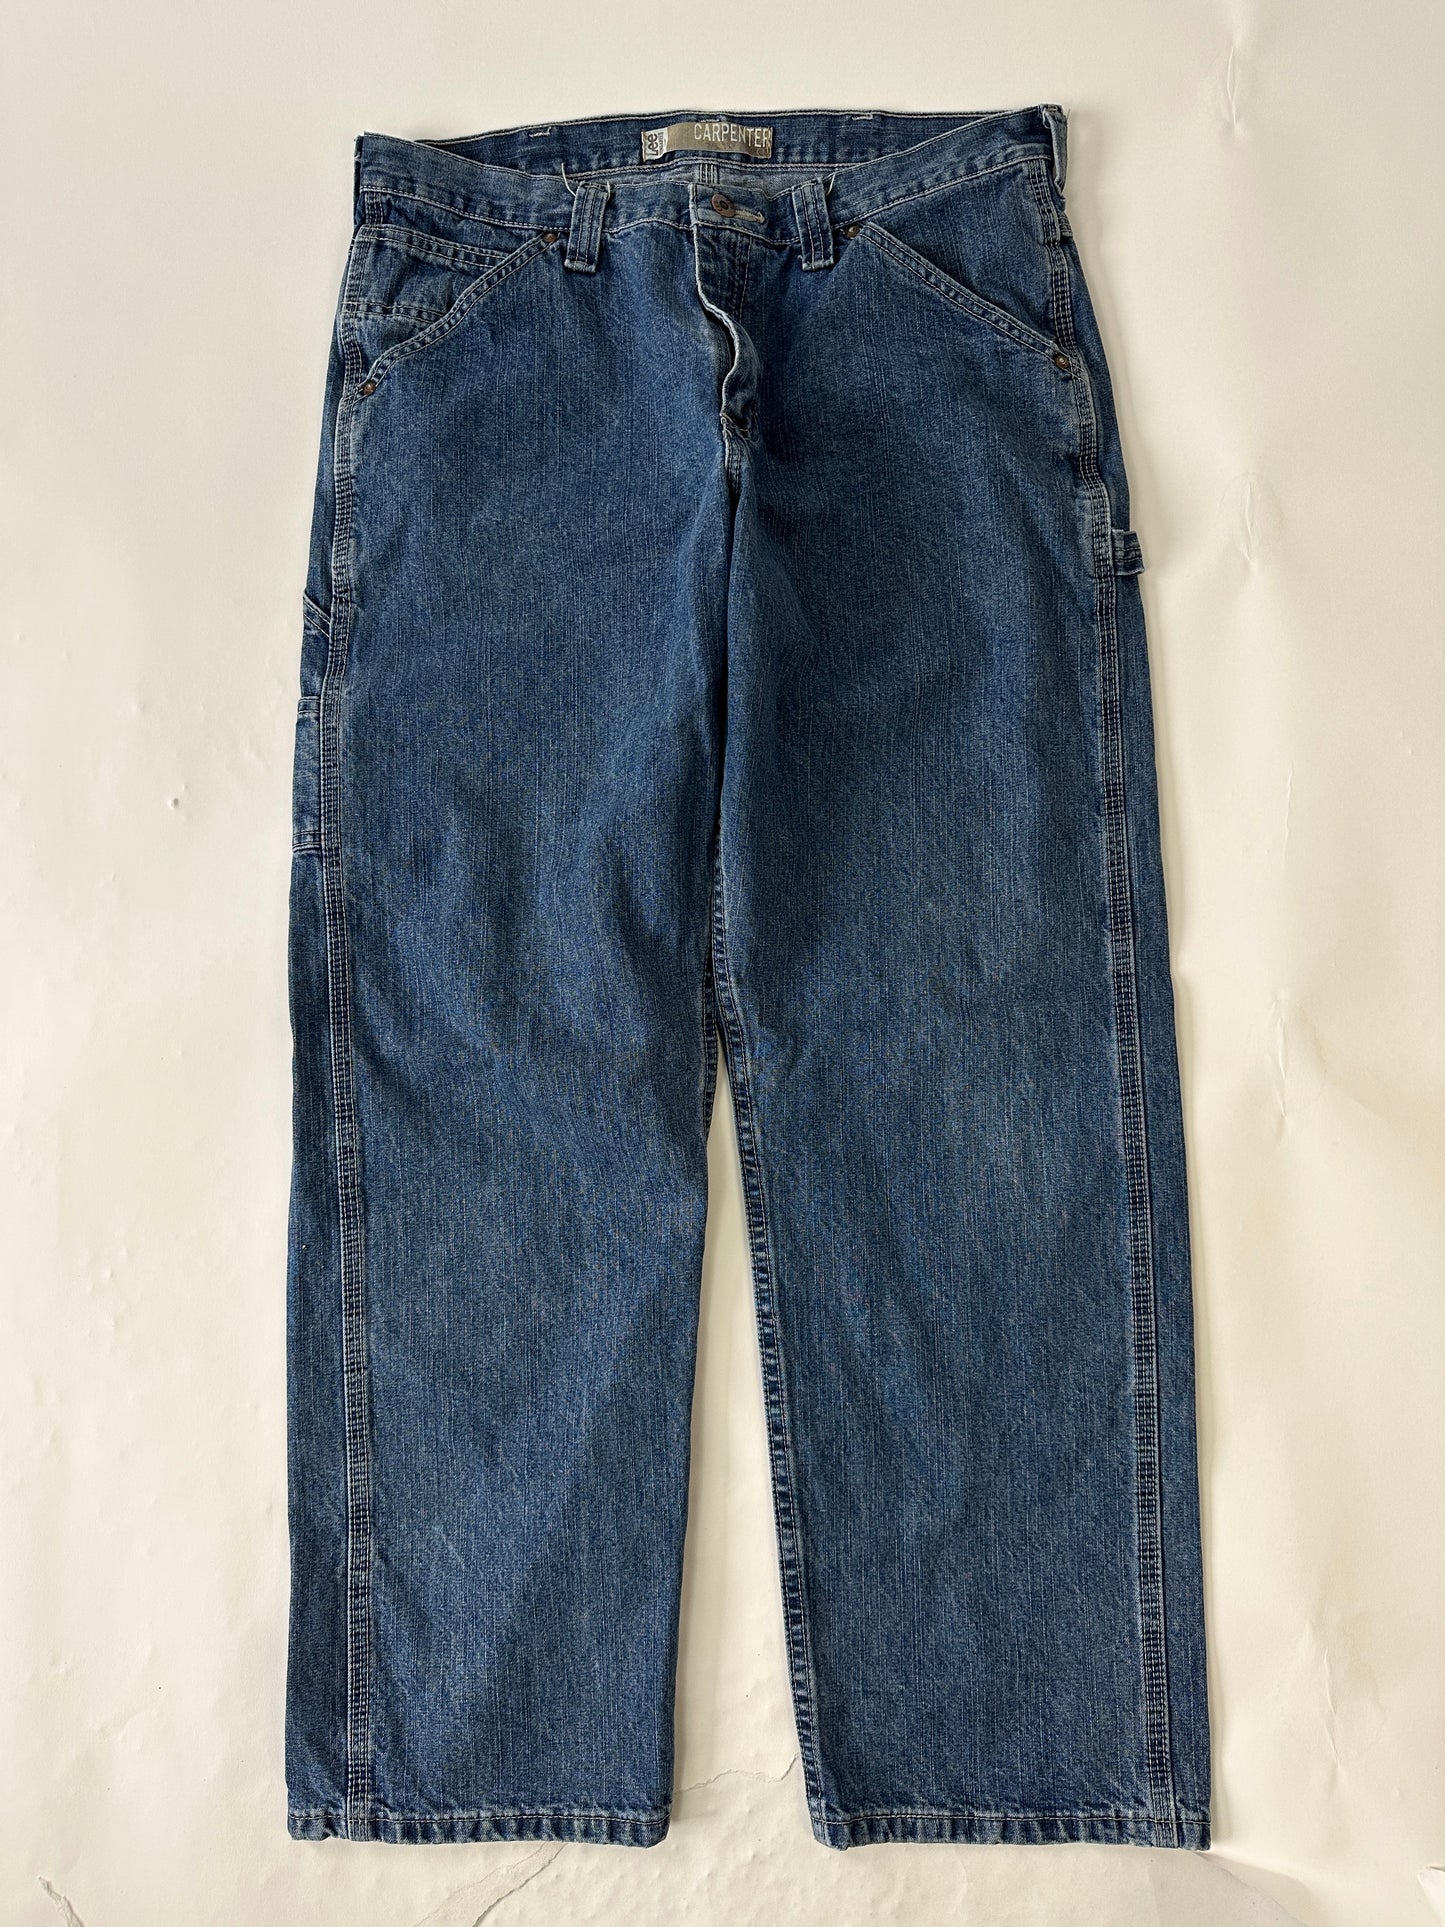 Lee Vintage Carpenter Jeans - 34 x 30